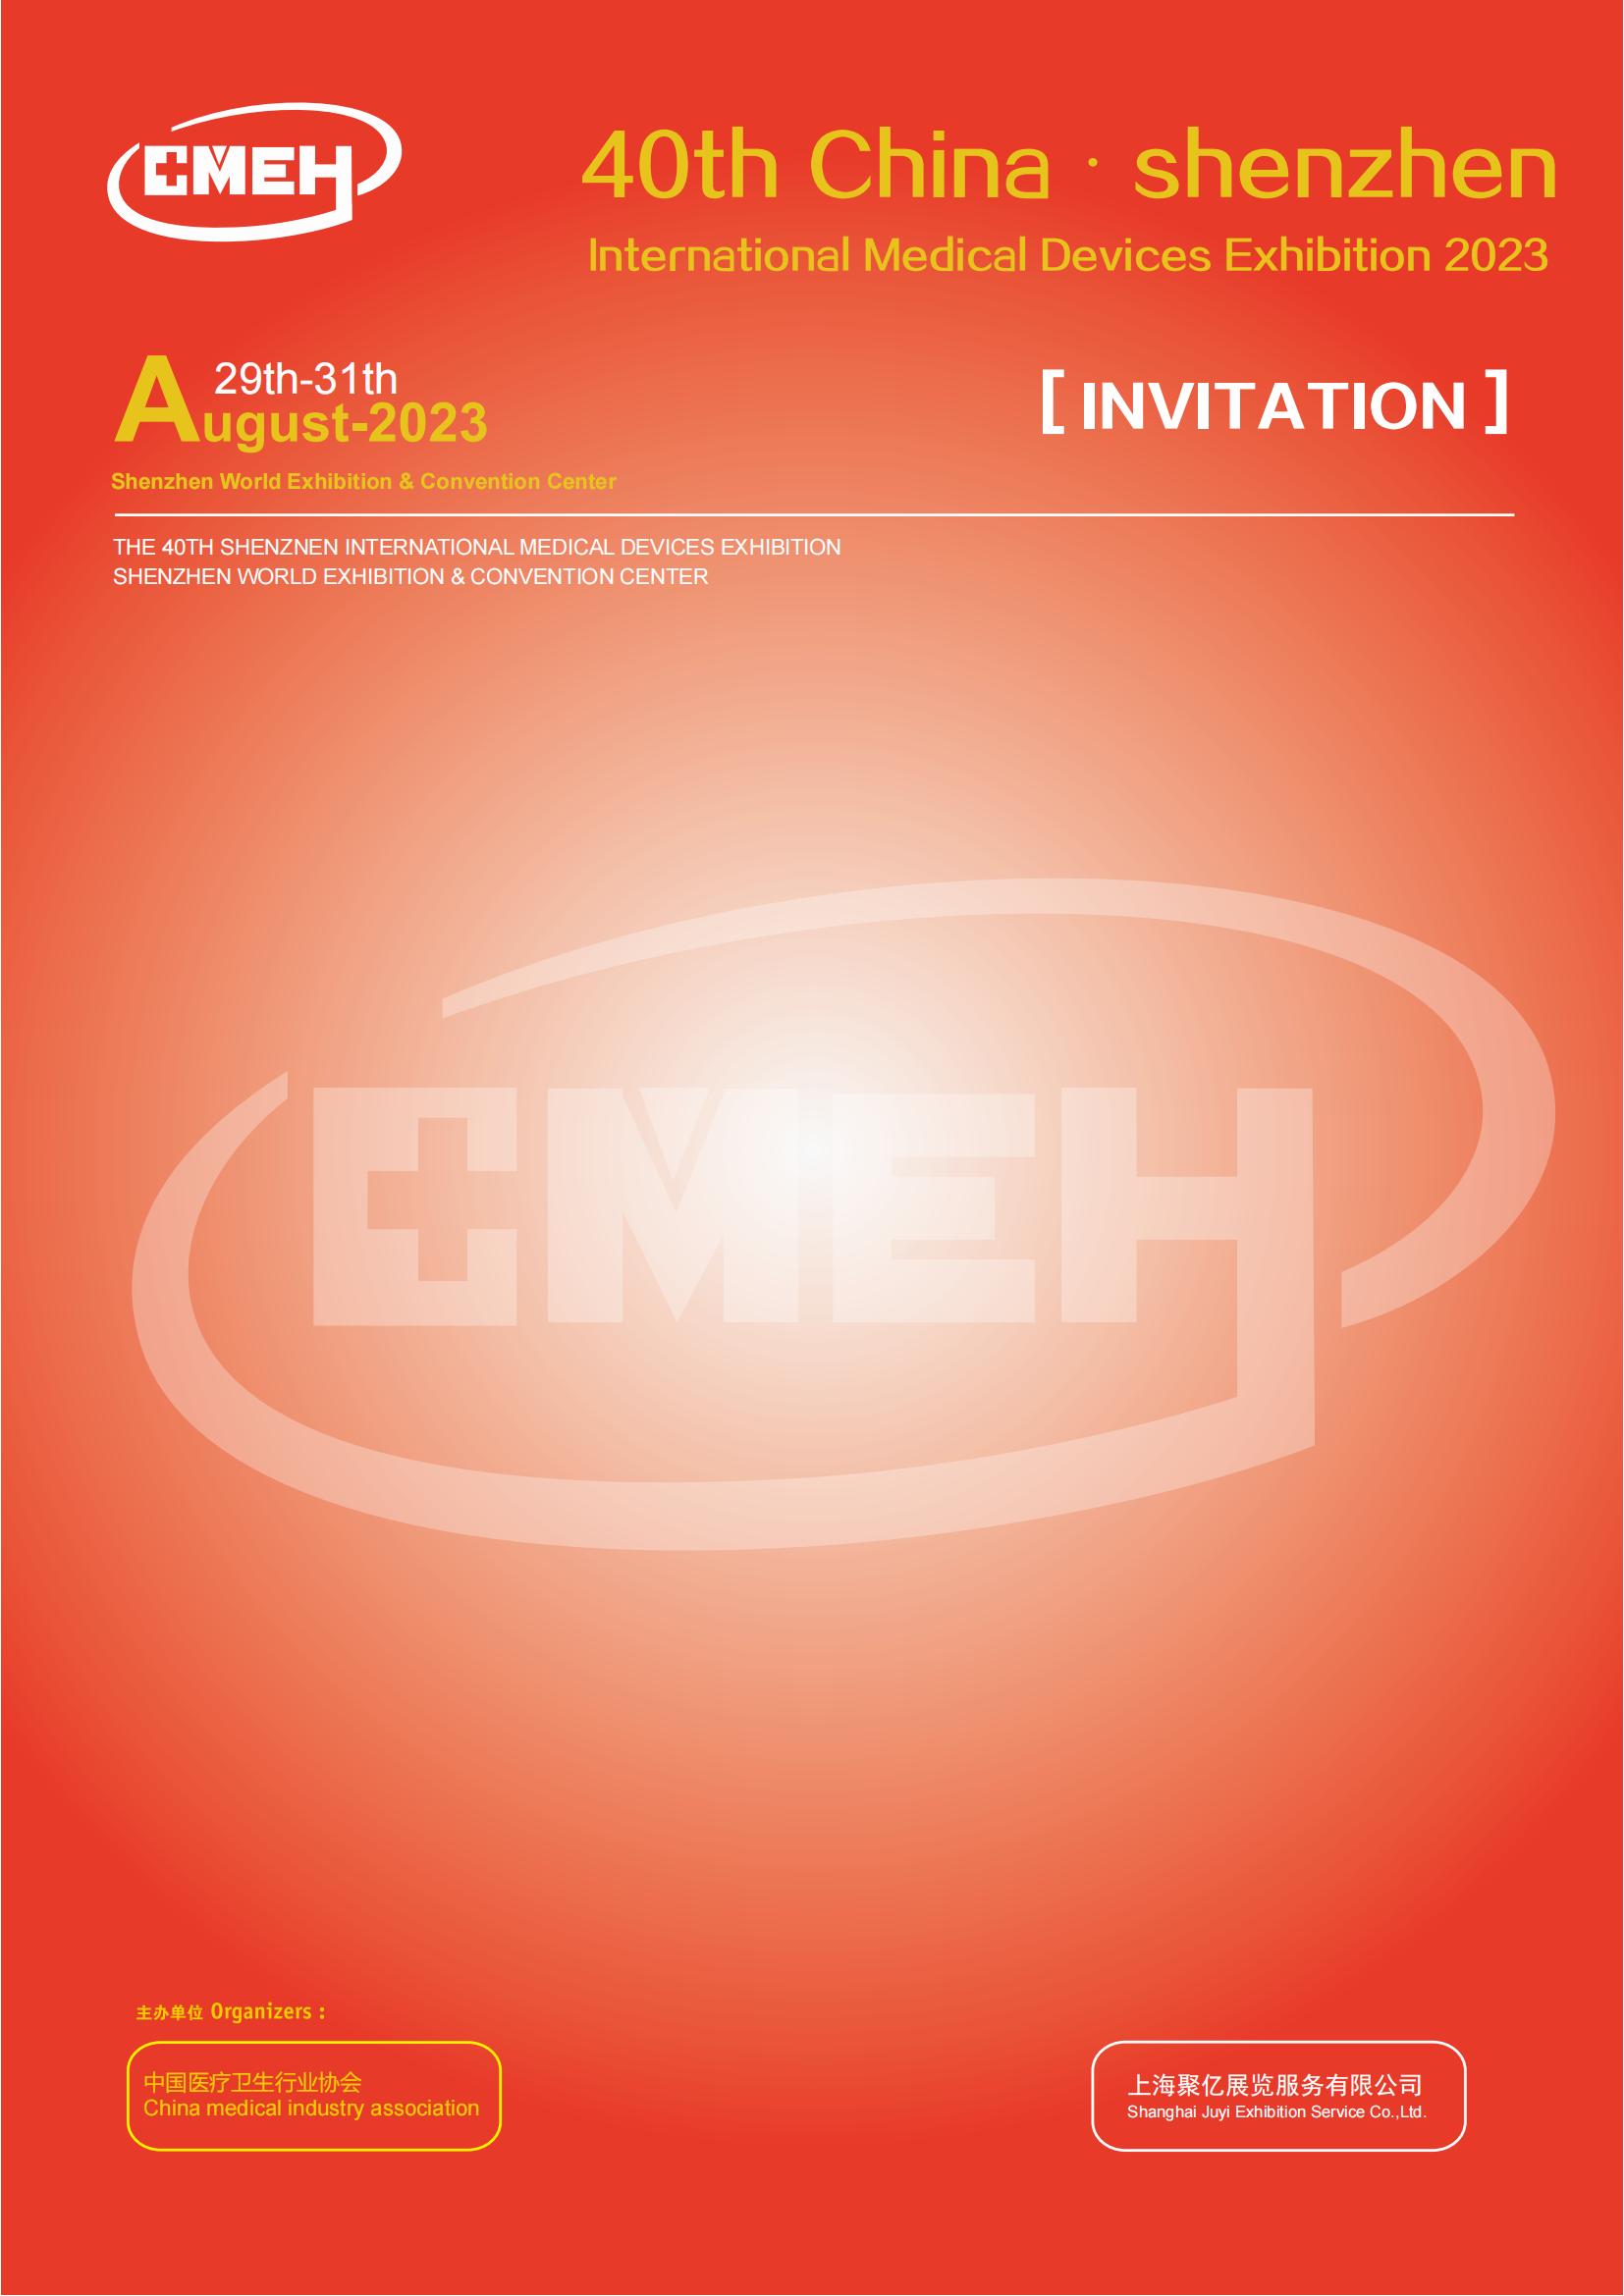 Shenzhen International Medical Exhibition 2023